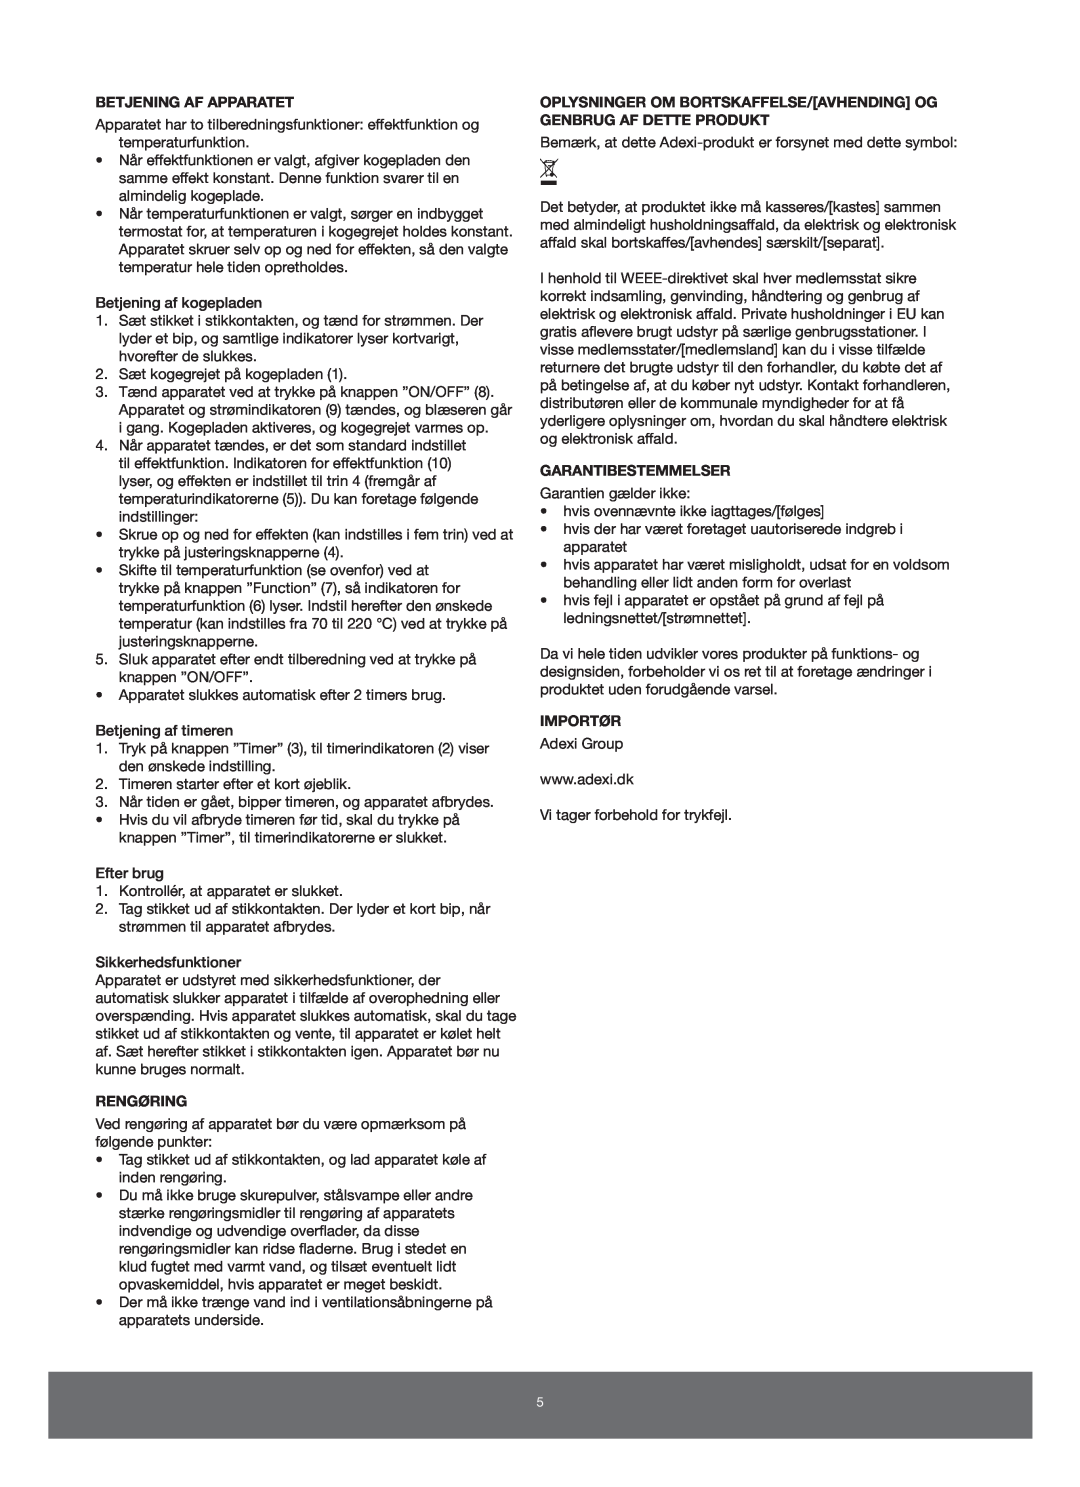 Melissa 650-005 manual Betjening Af Apparatet, Rengøring, Garantibestemmelser, Importør 